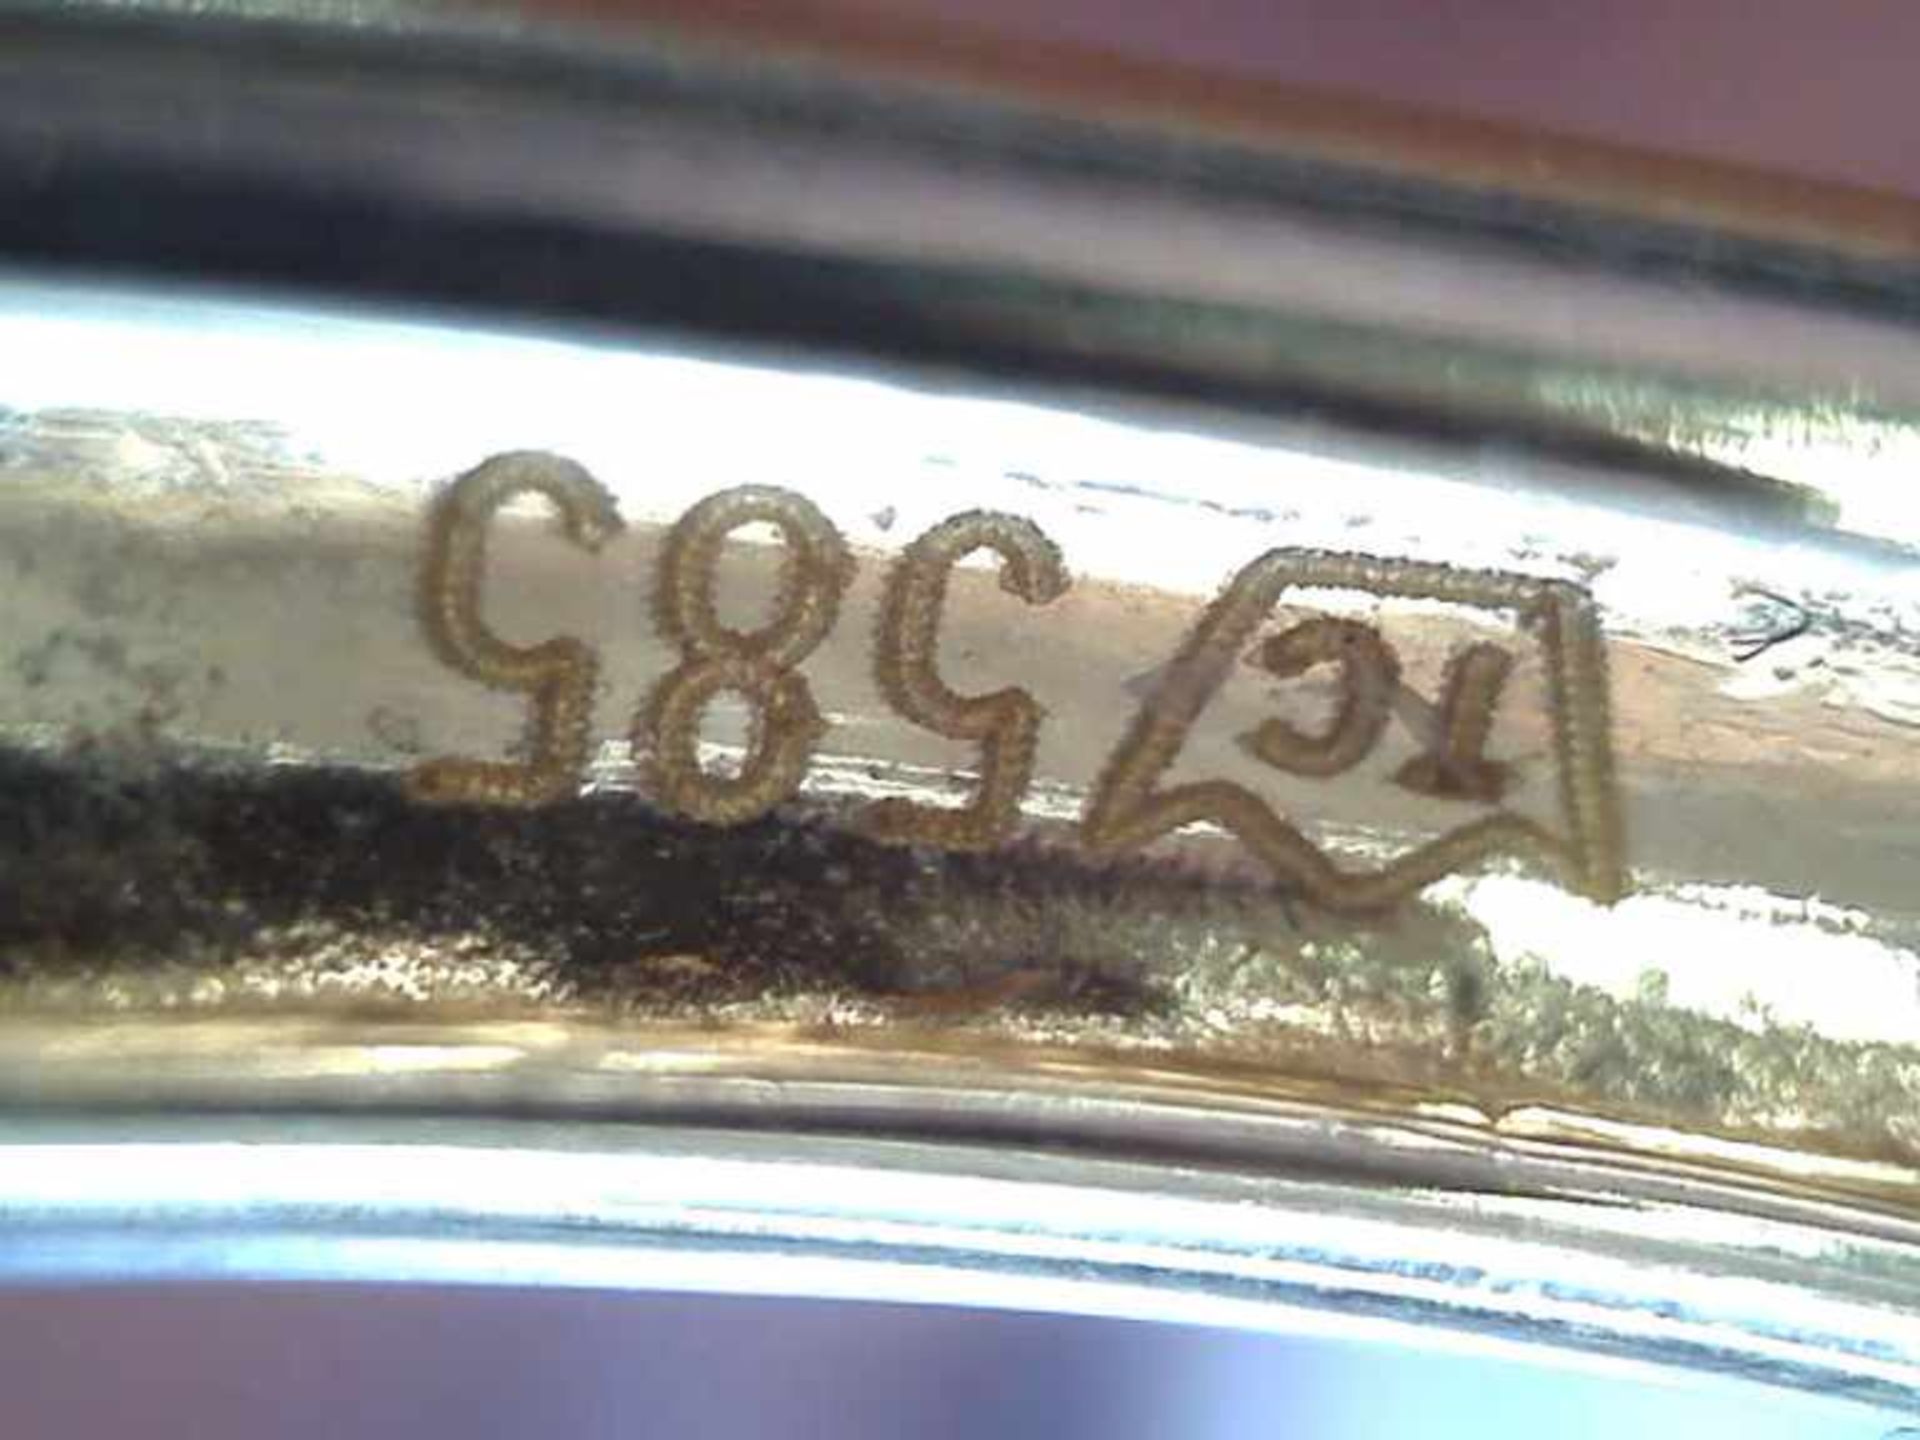 Damenring 585er GG, 2,6 g, Ringschiene mit 62 Zirkonia besetzt, RG 59 - Bild 2 aus 2